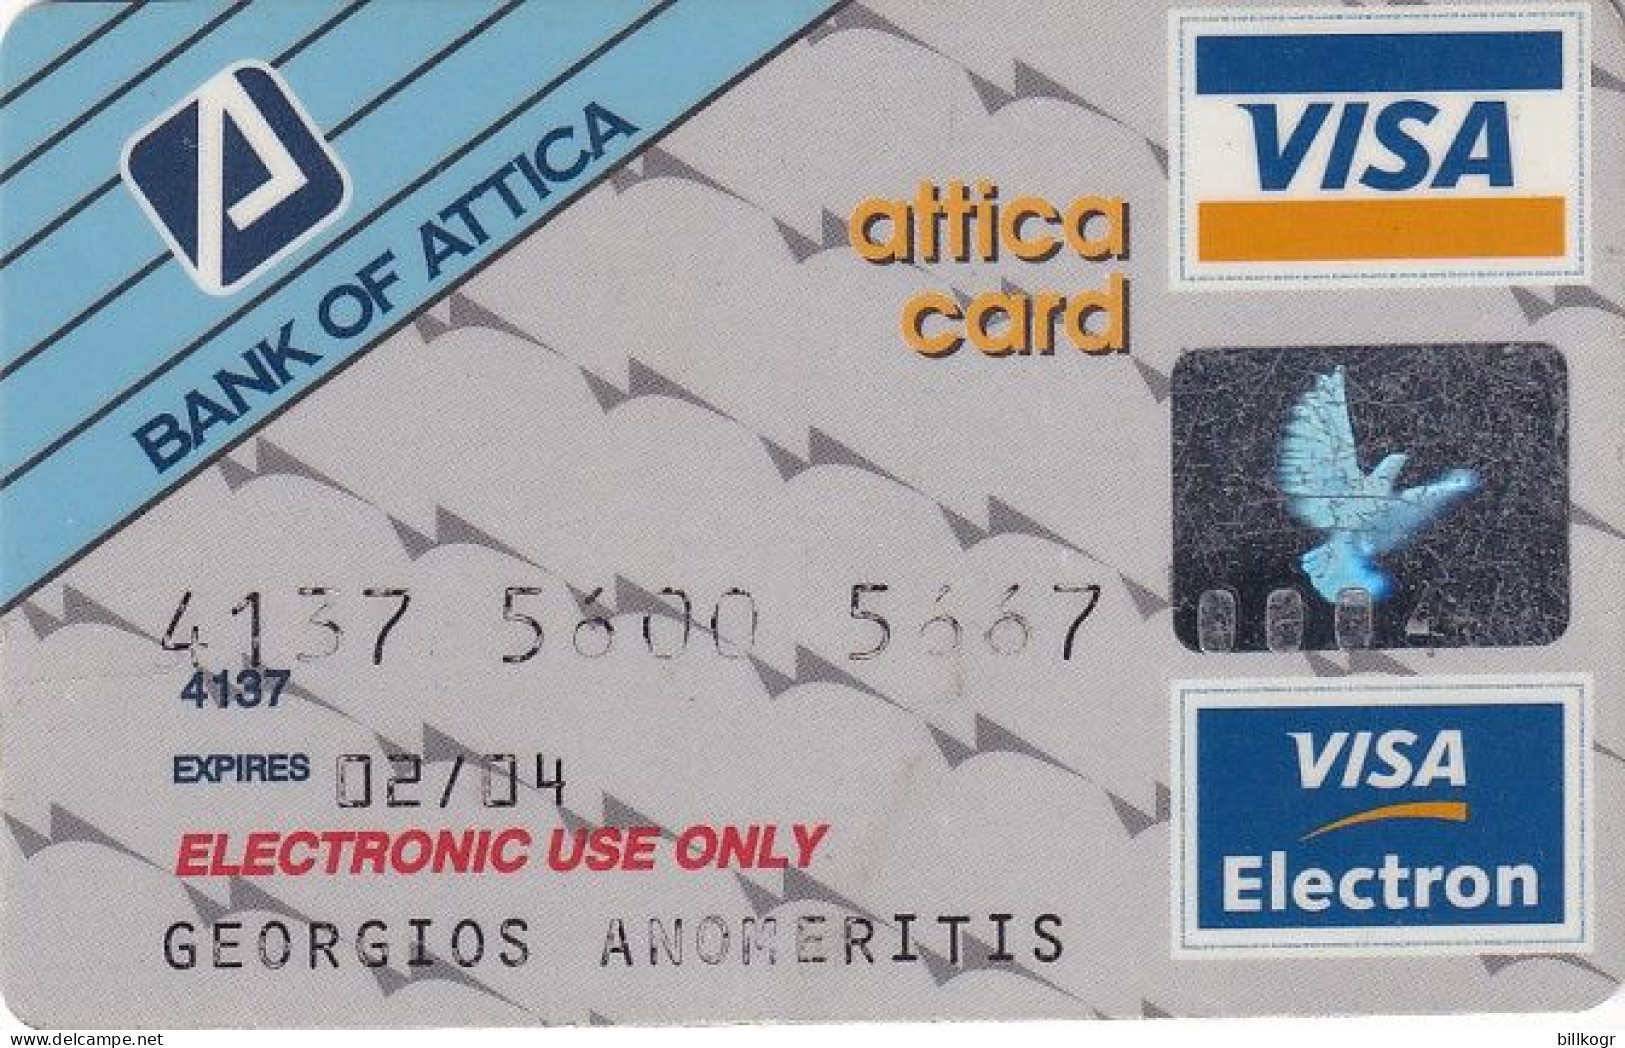 GREECE - Attica Bank Visa, 04/99, Used - Krediet Kaarten (vervaldatum Min. 10 Jaar)